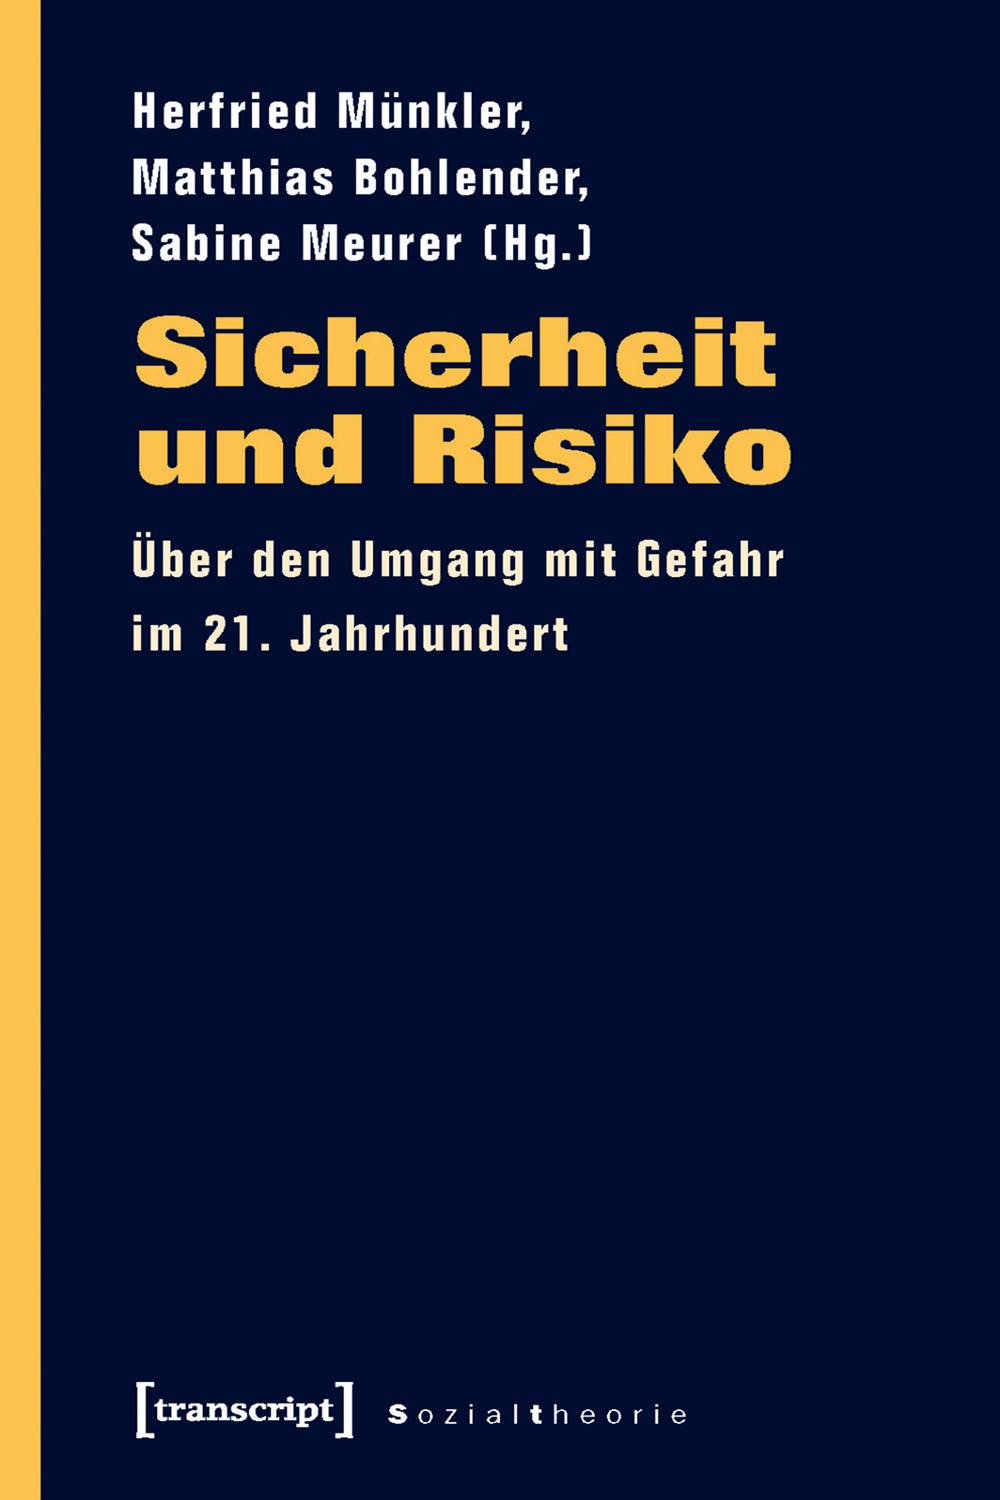 Sicherheit und Risiko - Herfried Münkler, Matthias Bohlender, Sabine Meurer